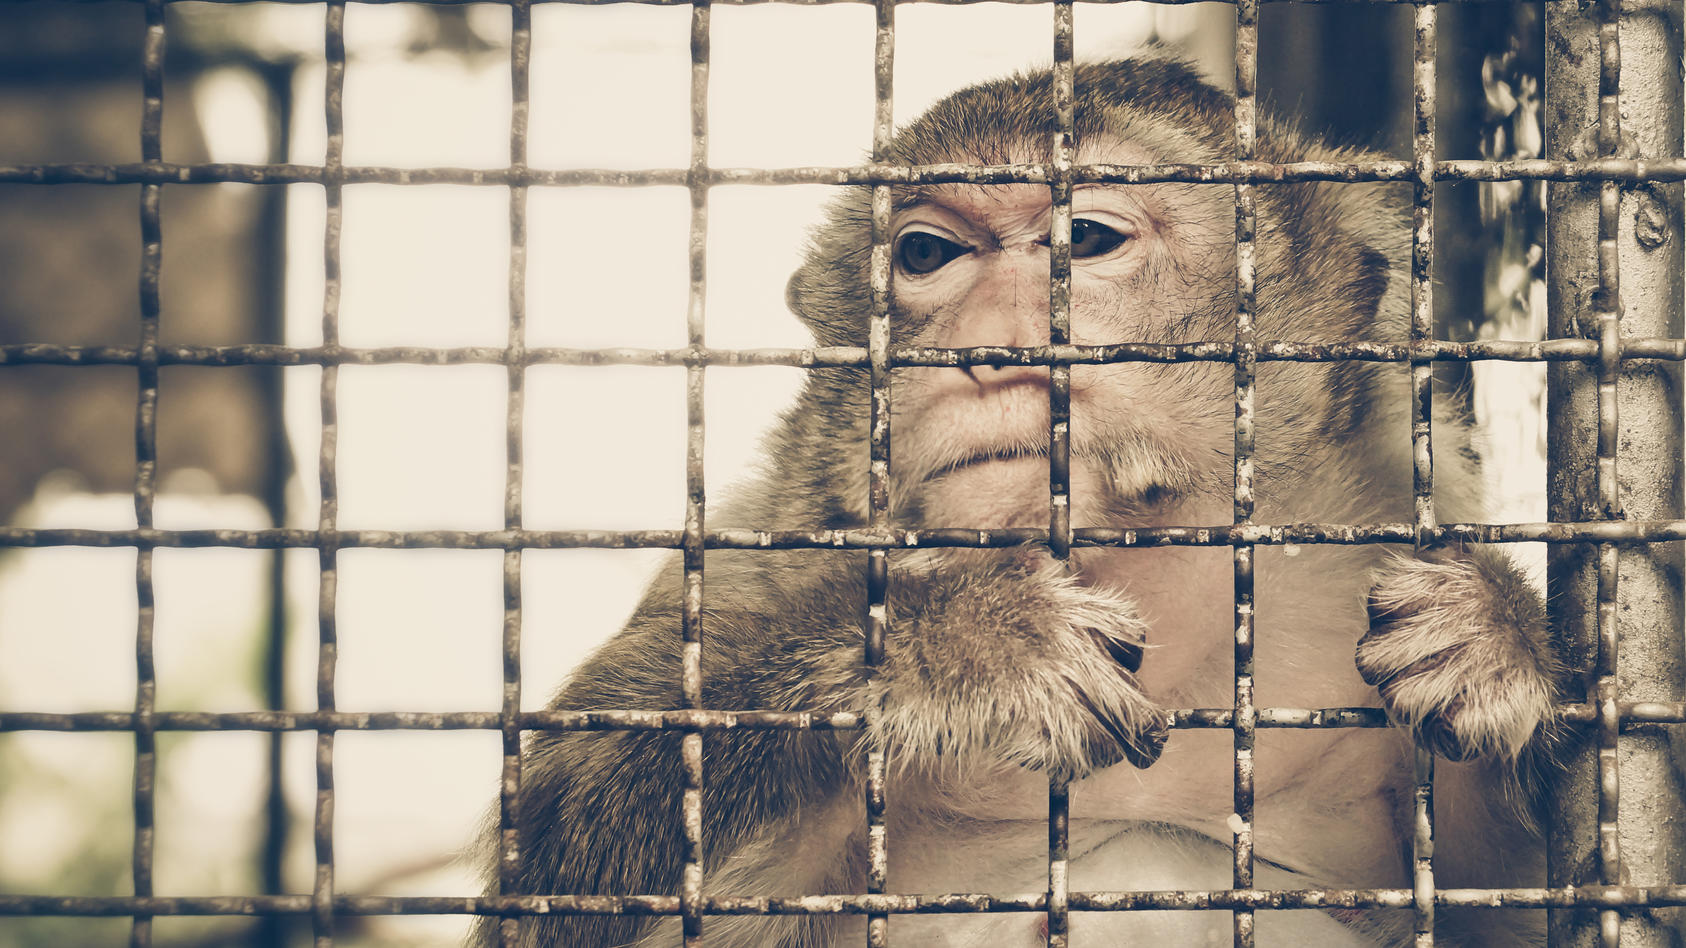 Ein traurig aussehender Affe schaut aus dem Käfig, in dem er eingesperrt ist.